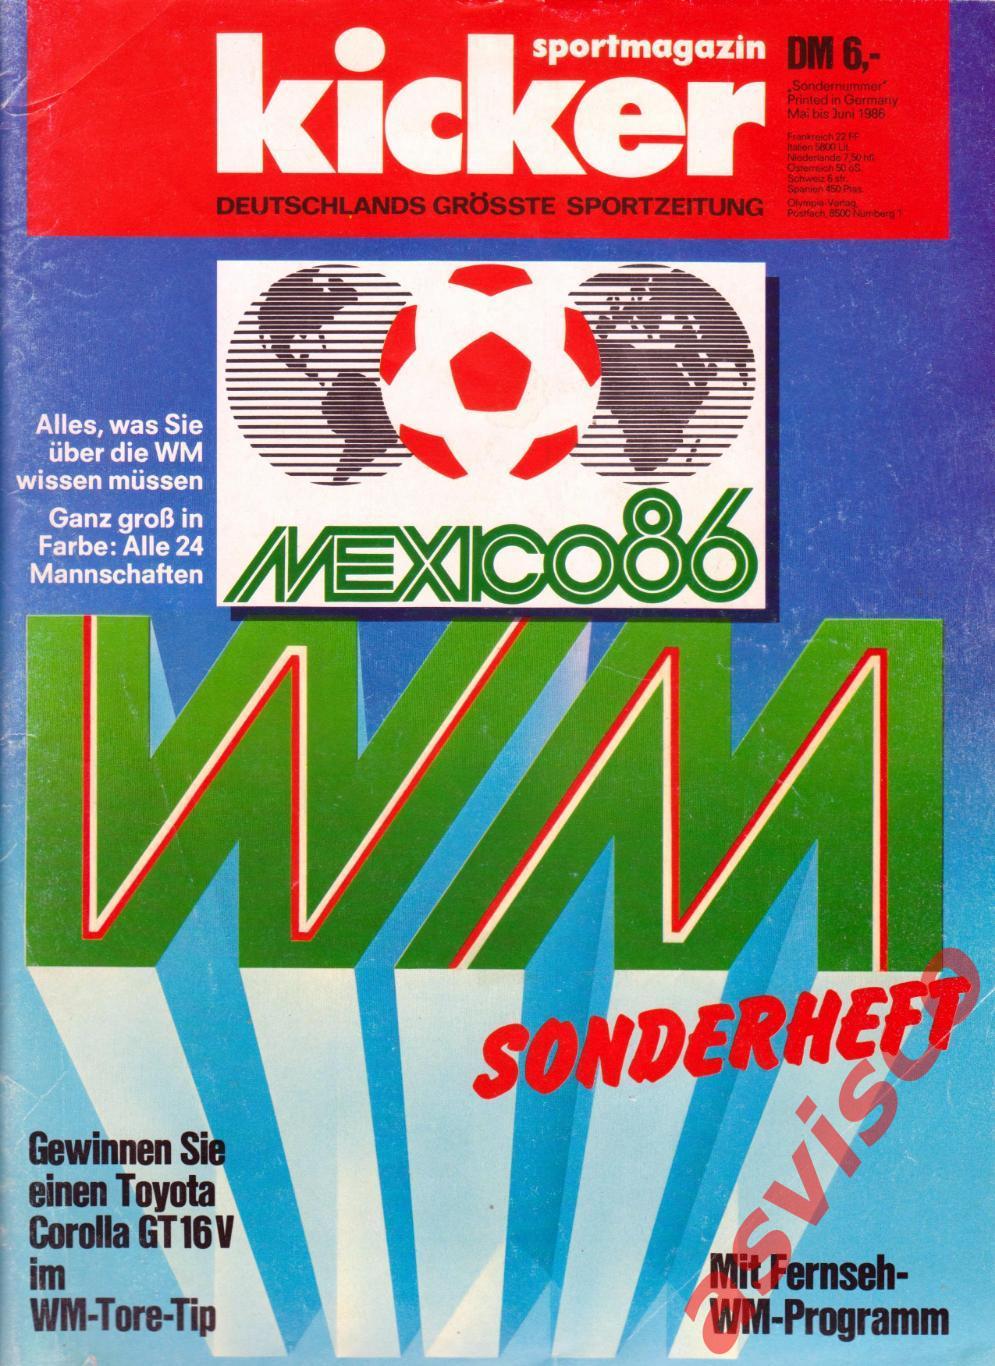 Чемпионат Мира по футболу в Мексике 1986 года. Представление команд.